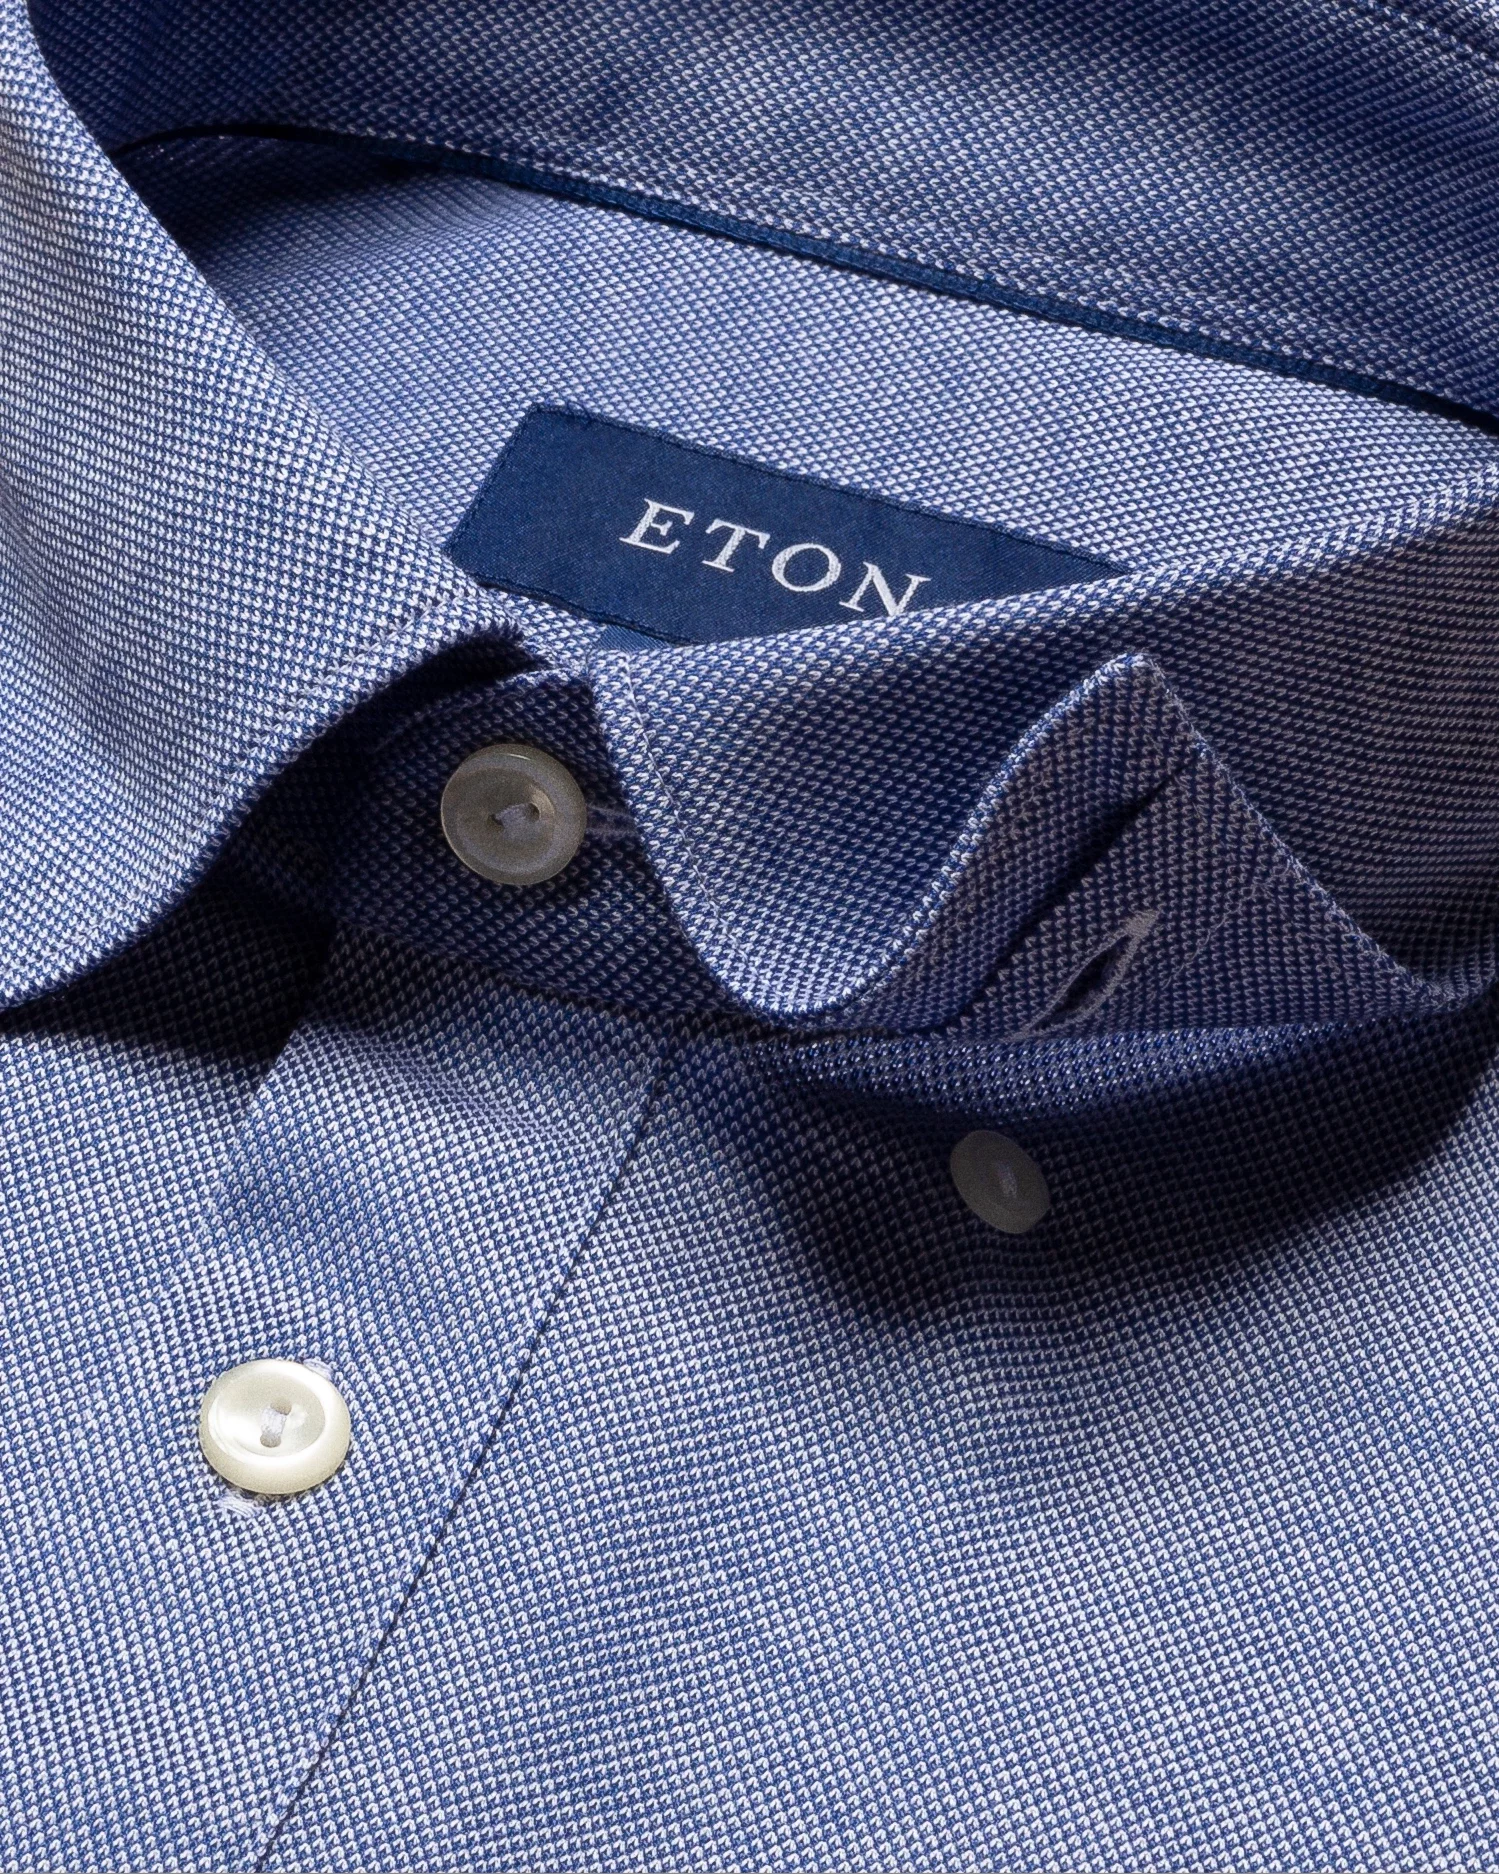 Eton - dark blue jersey button under short sleeve